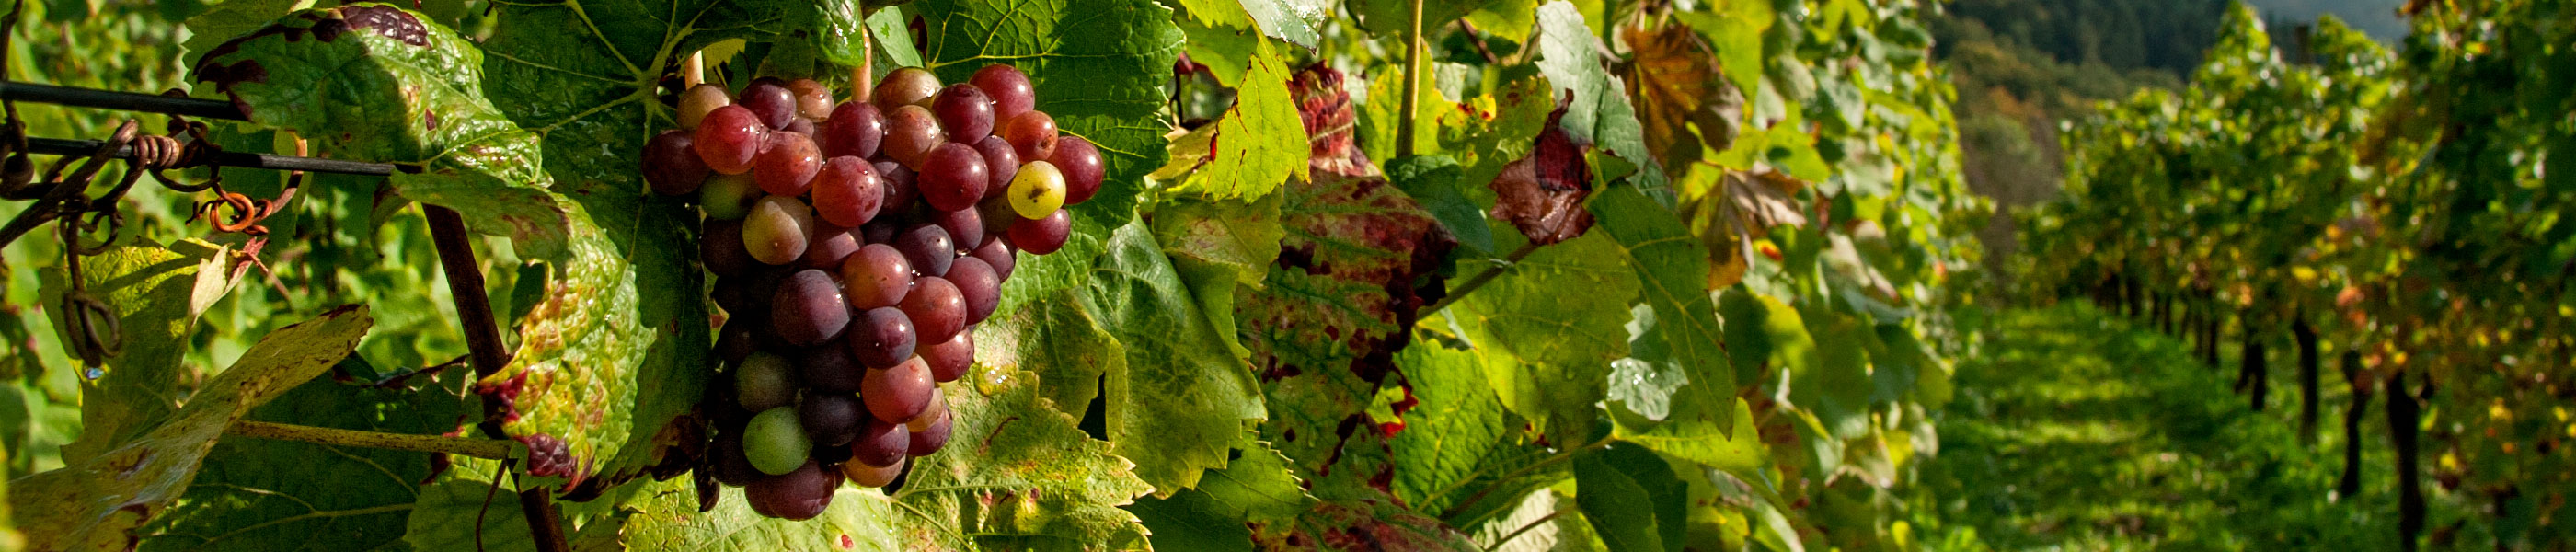 Venta de vinos ecológicos en Santa Cecilia